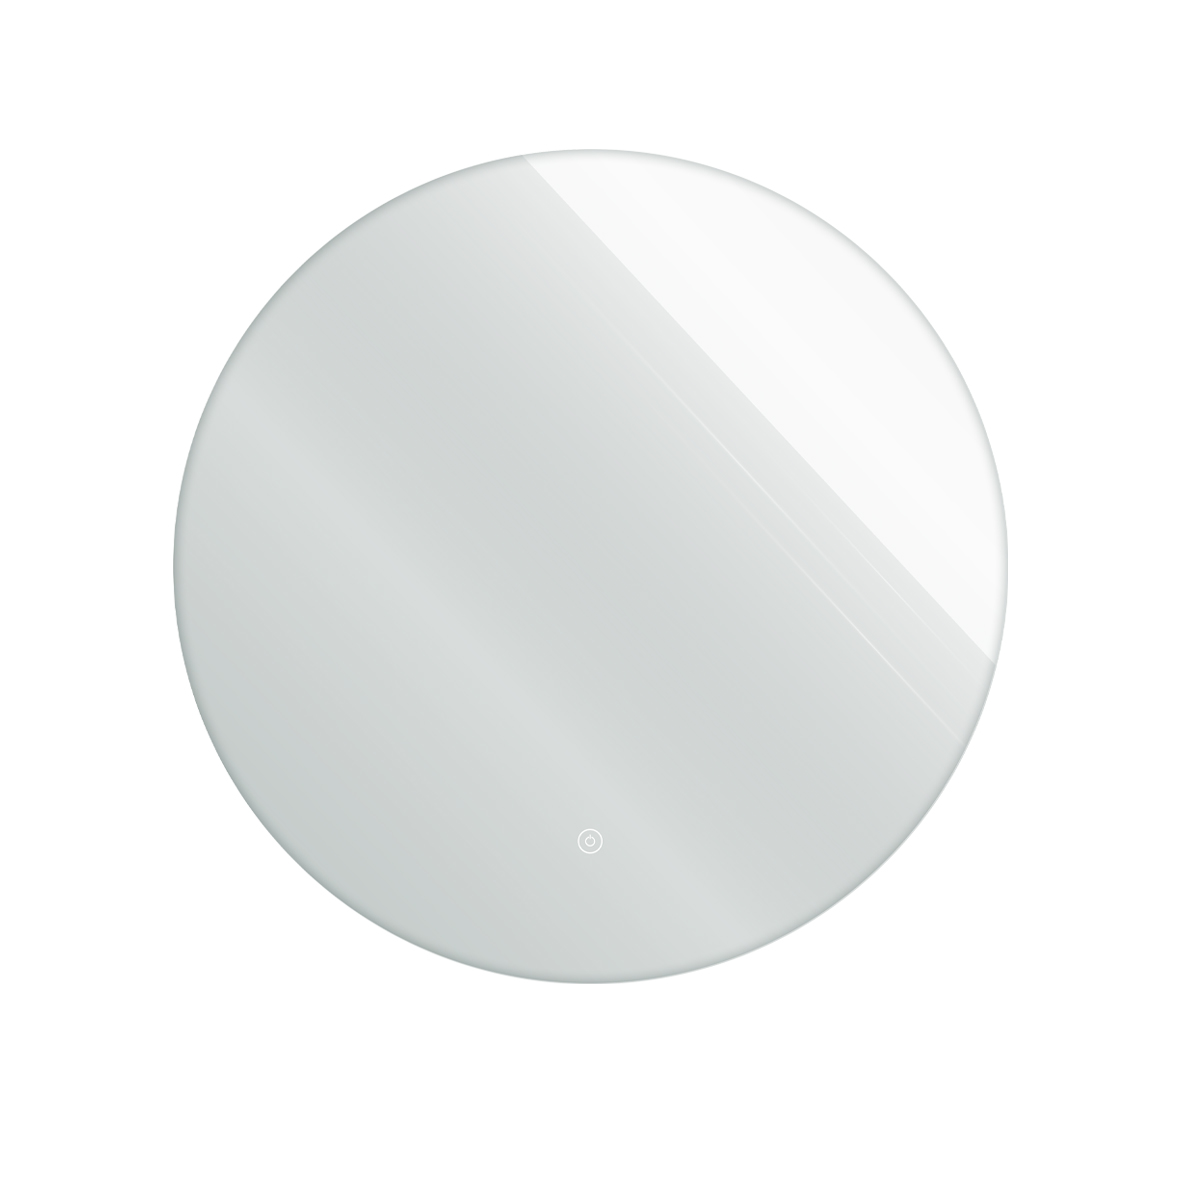 САНАКС - Зеркало D 600 мм, сенсорное, с внутренней LED подсветкой, безрамочное, круглое